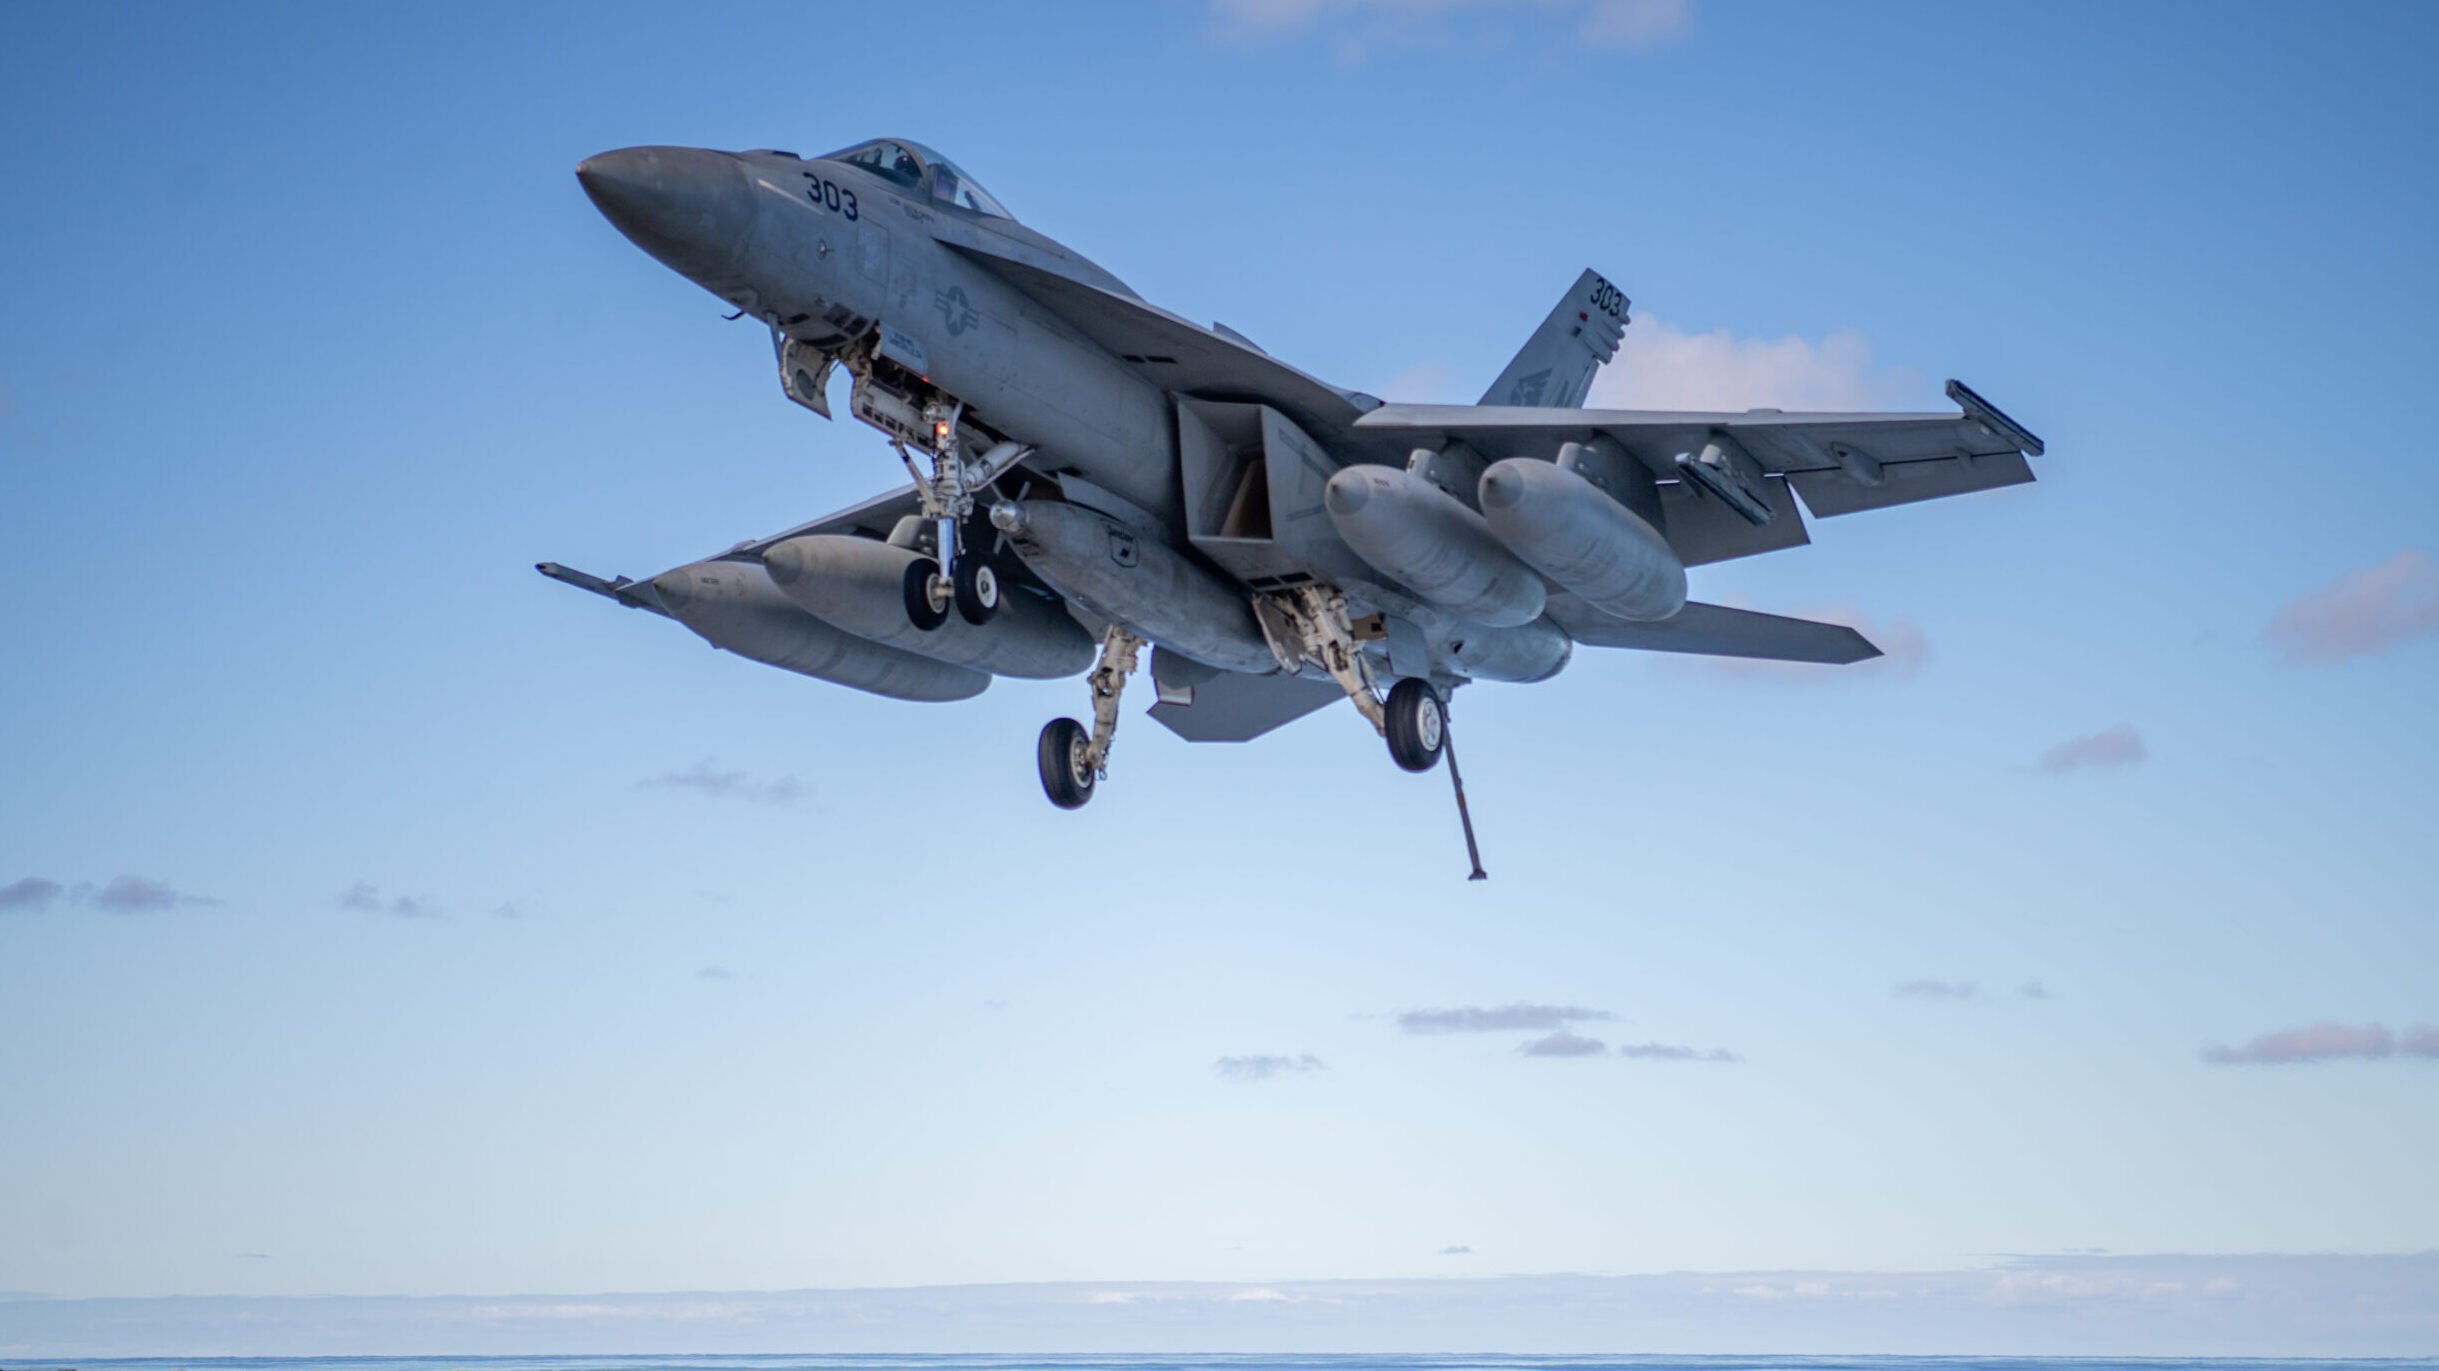 Navy Super Hornet fleet aging faster, less available than predecessor fleet: CBO